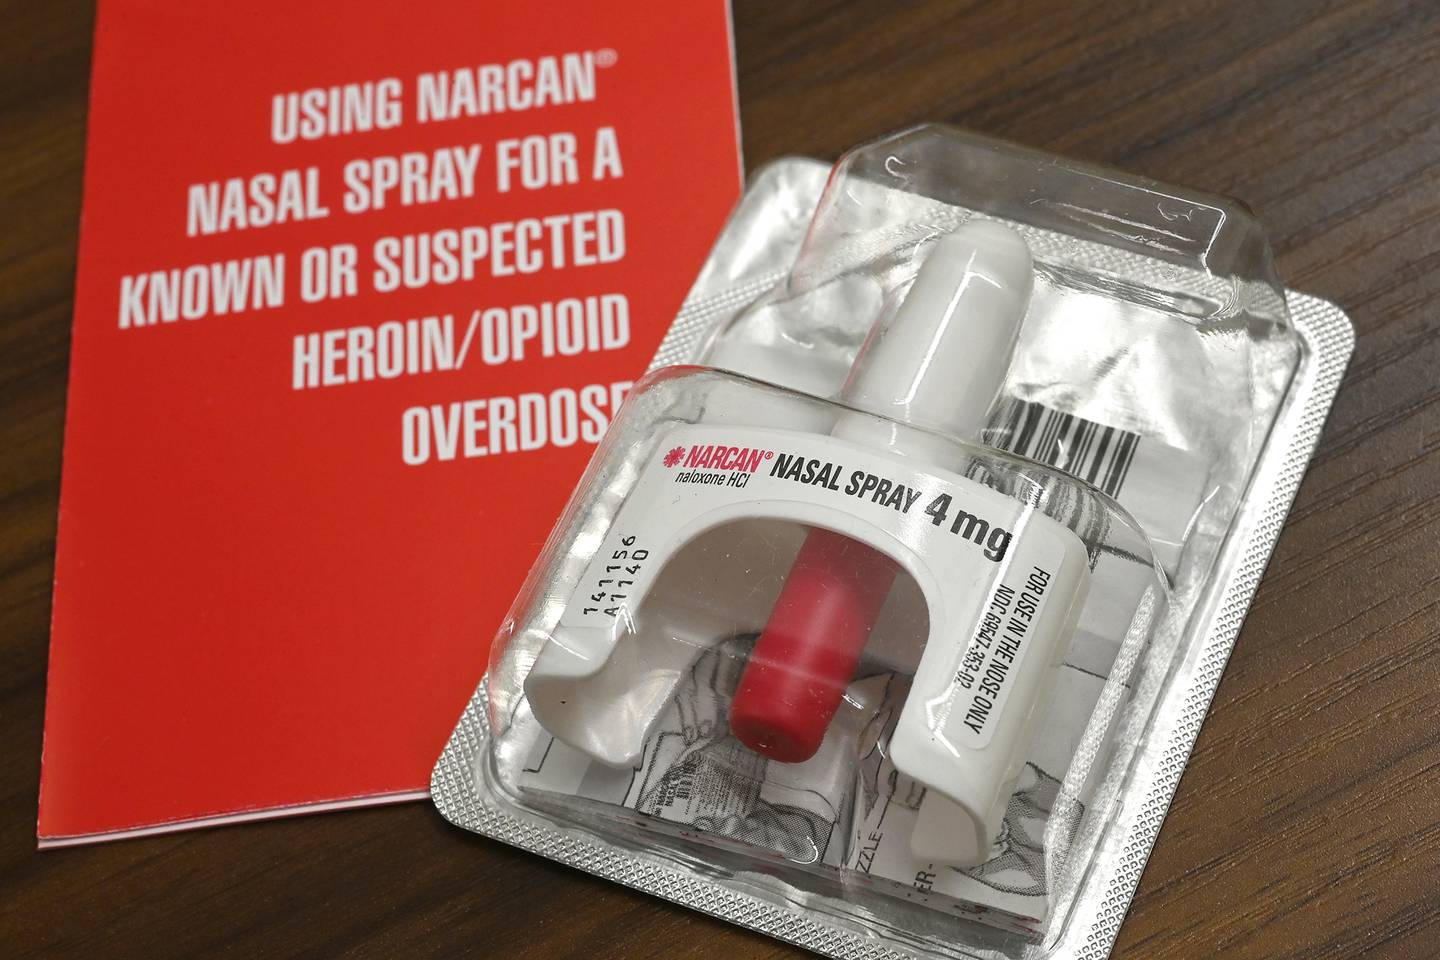 Heroin/Opioid Overdose Rescue Kit